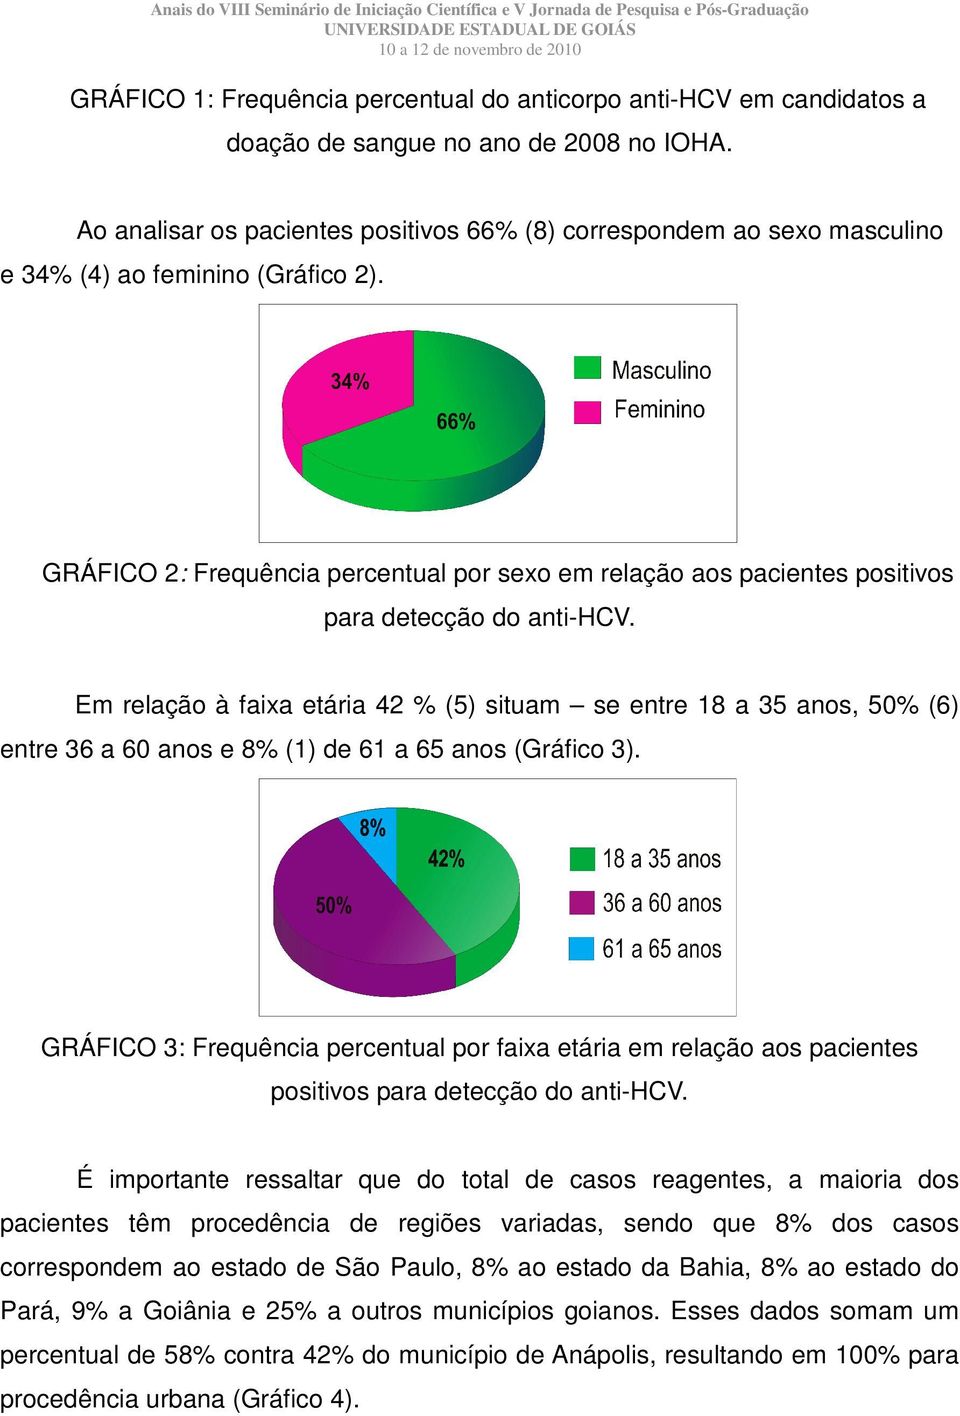 GRÁFICO 2: Frequência percentual por sexo em relação aos pacientes positivos para detecção do anti-hcv.